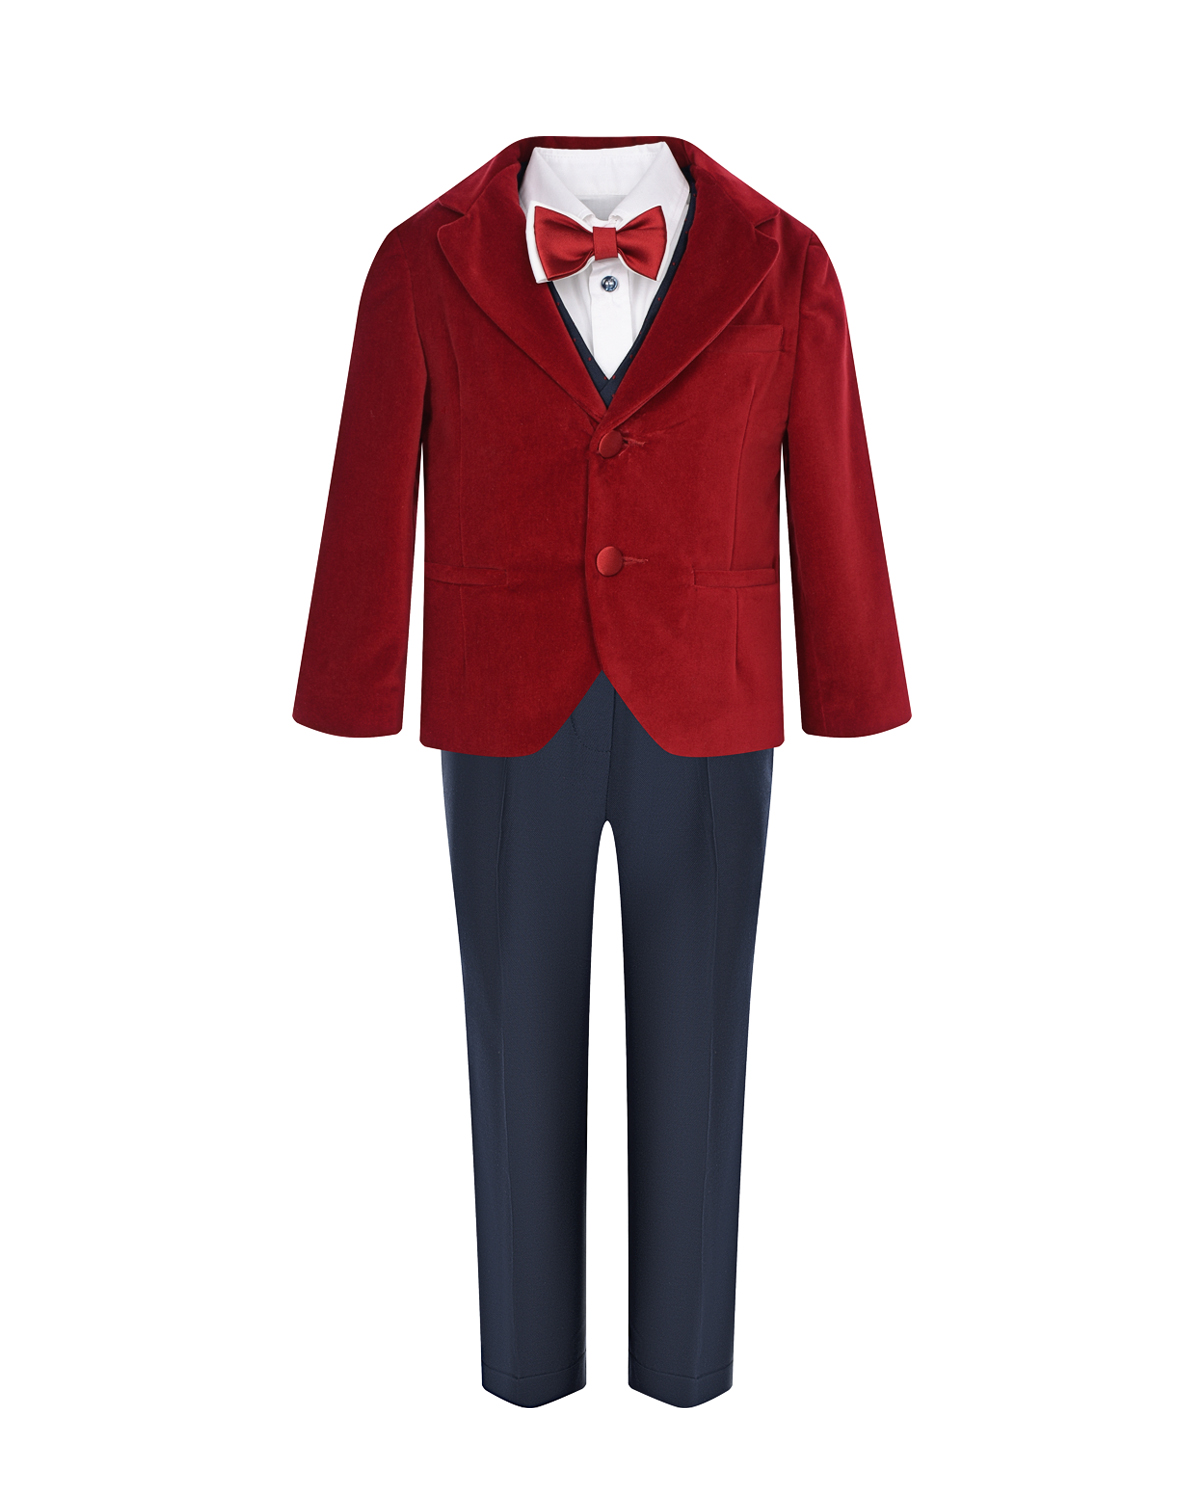 Комплект: бархатный пиджак, жилет, рубашка, брюки и бабочка Baby A детский, размер 80, цвет мультиколор